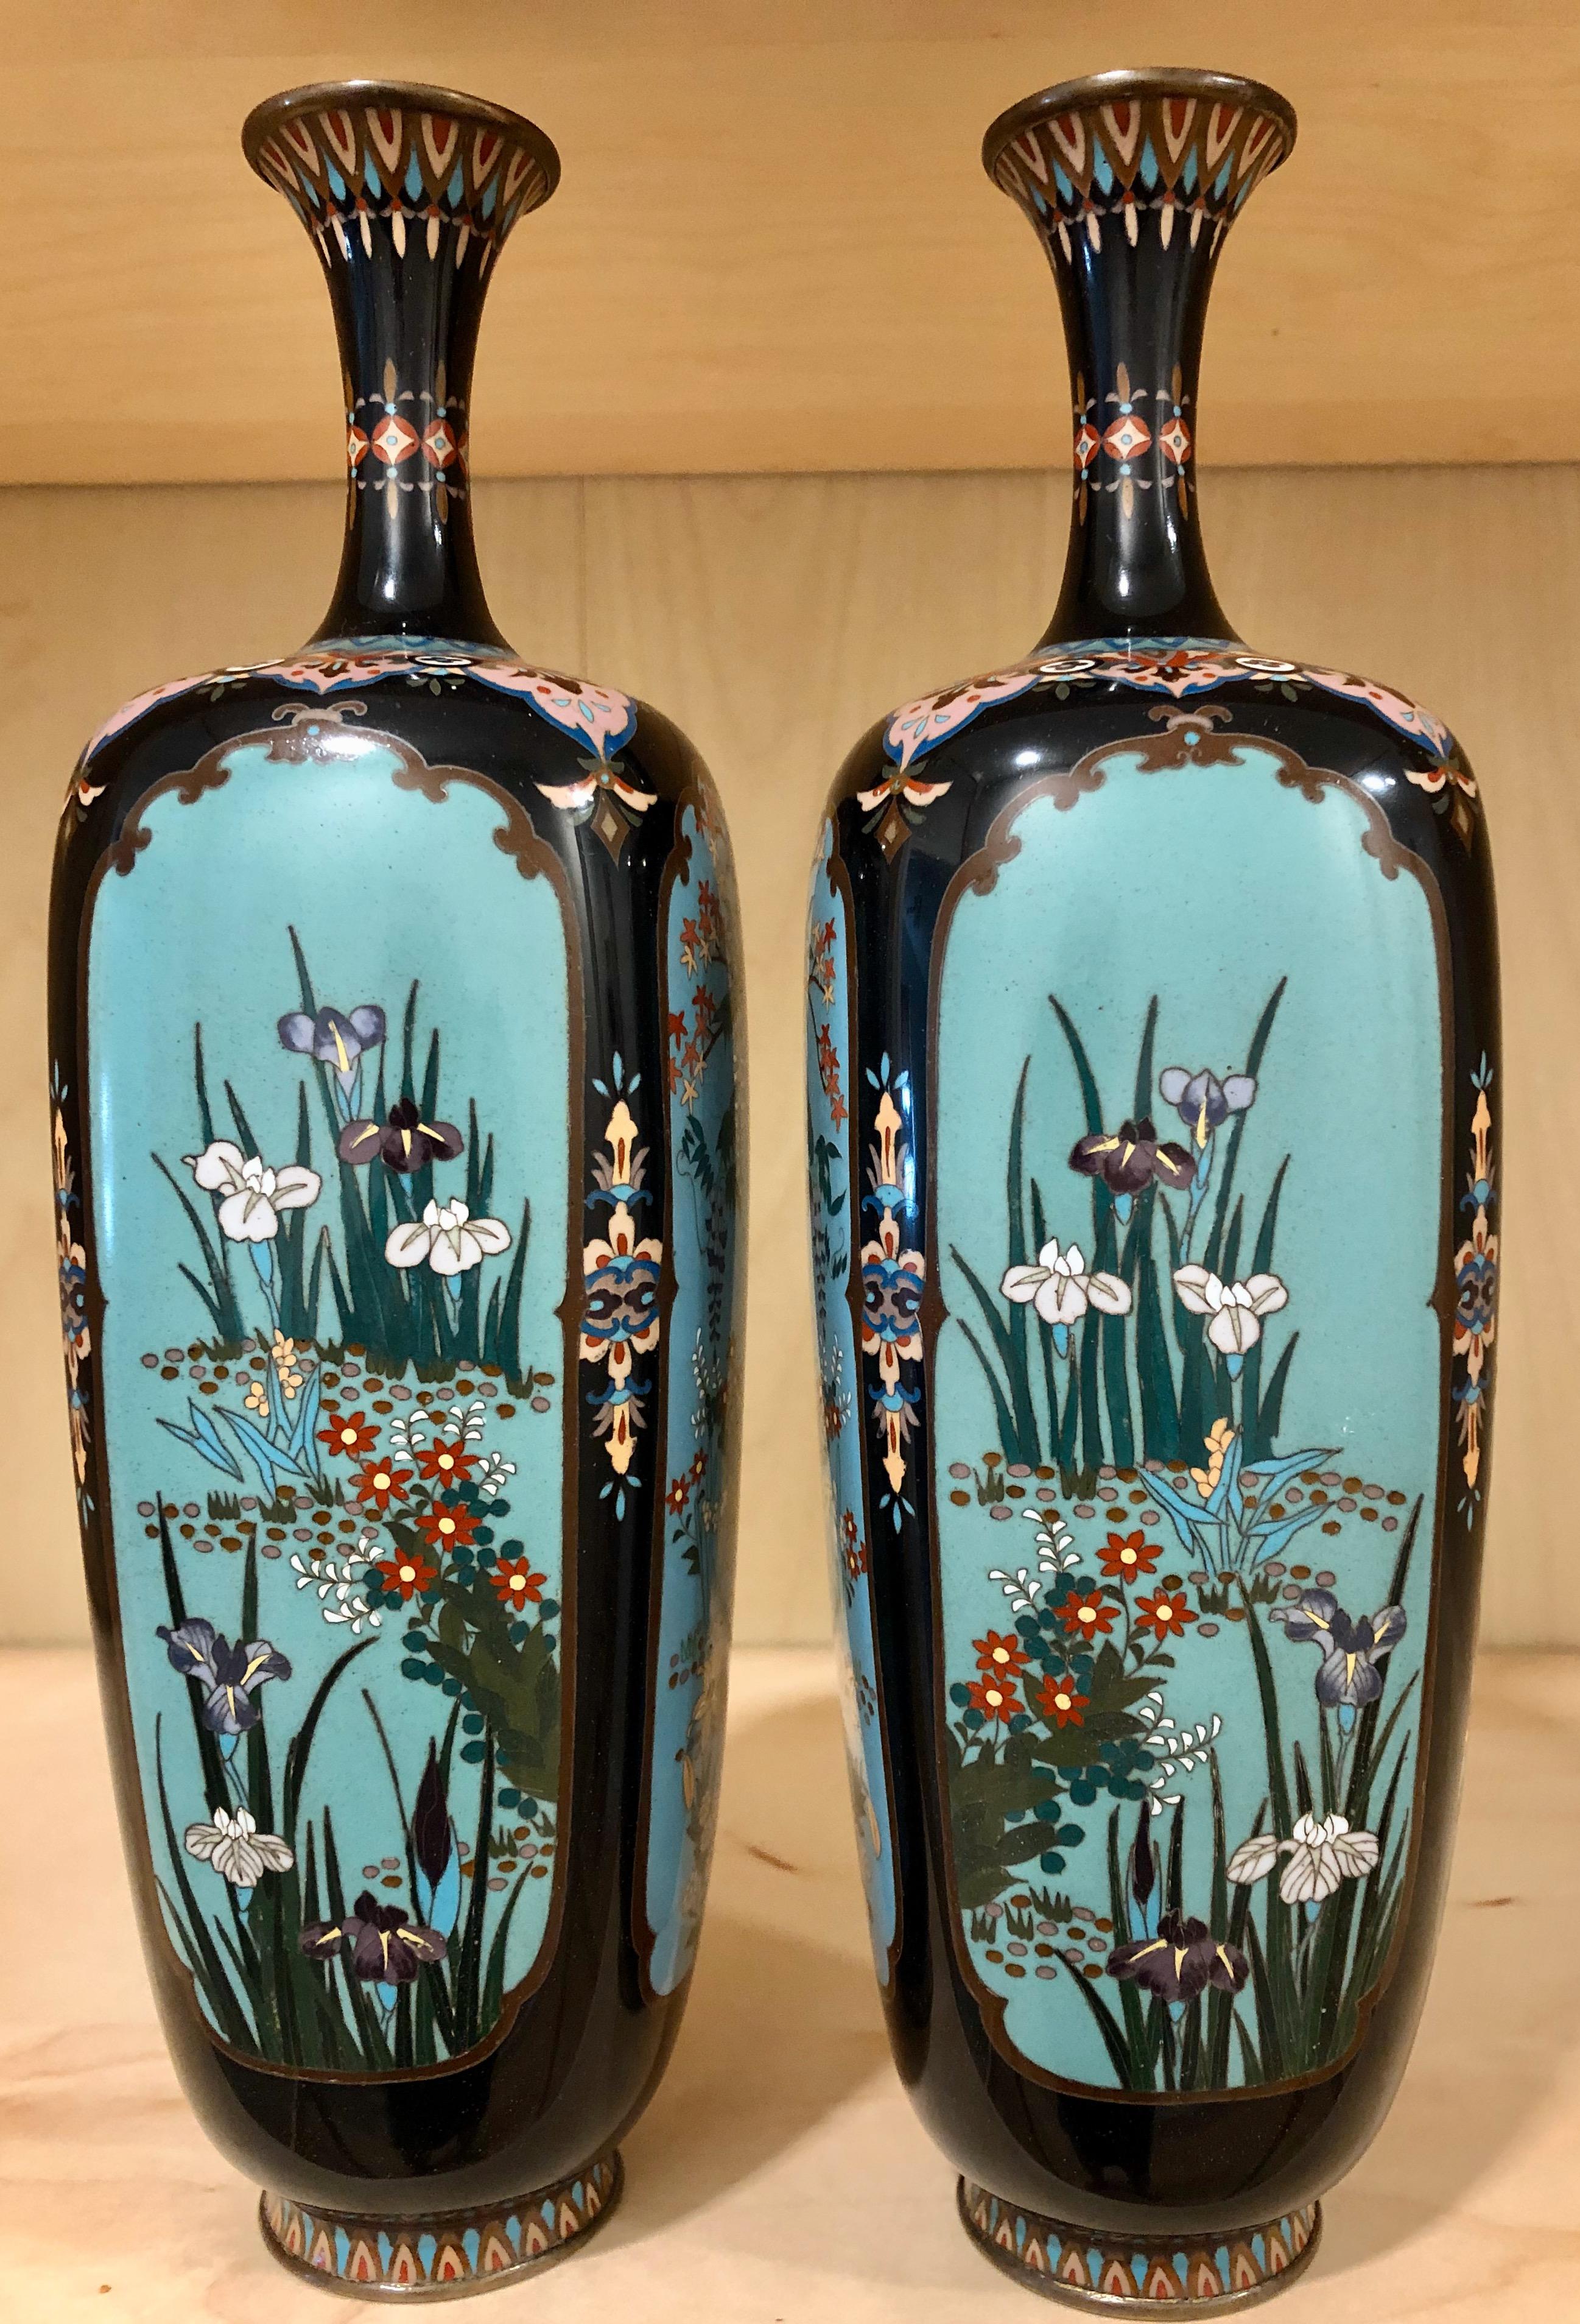 Japanese Meiji cloisonne pair of very fine and detailed vases. Maker's mark on the bottom.